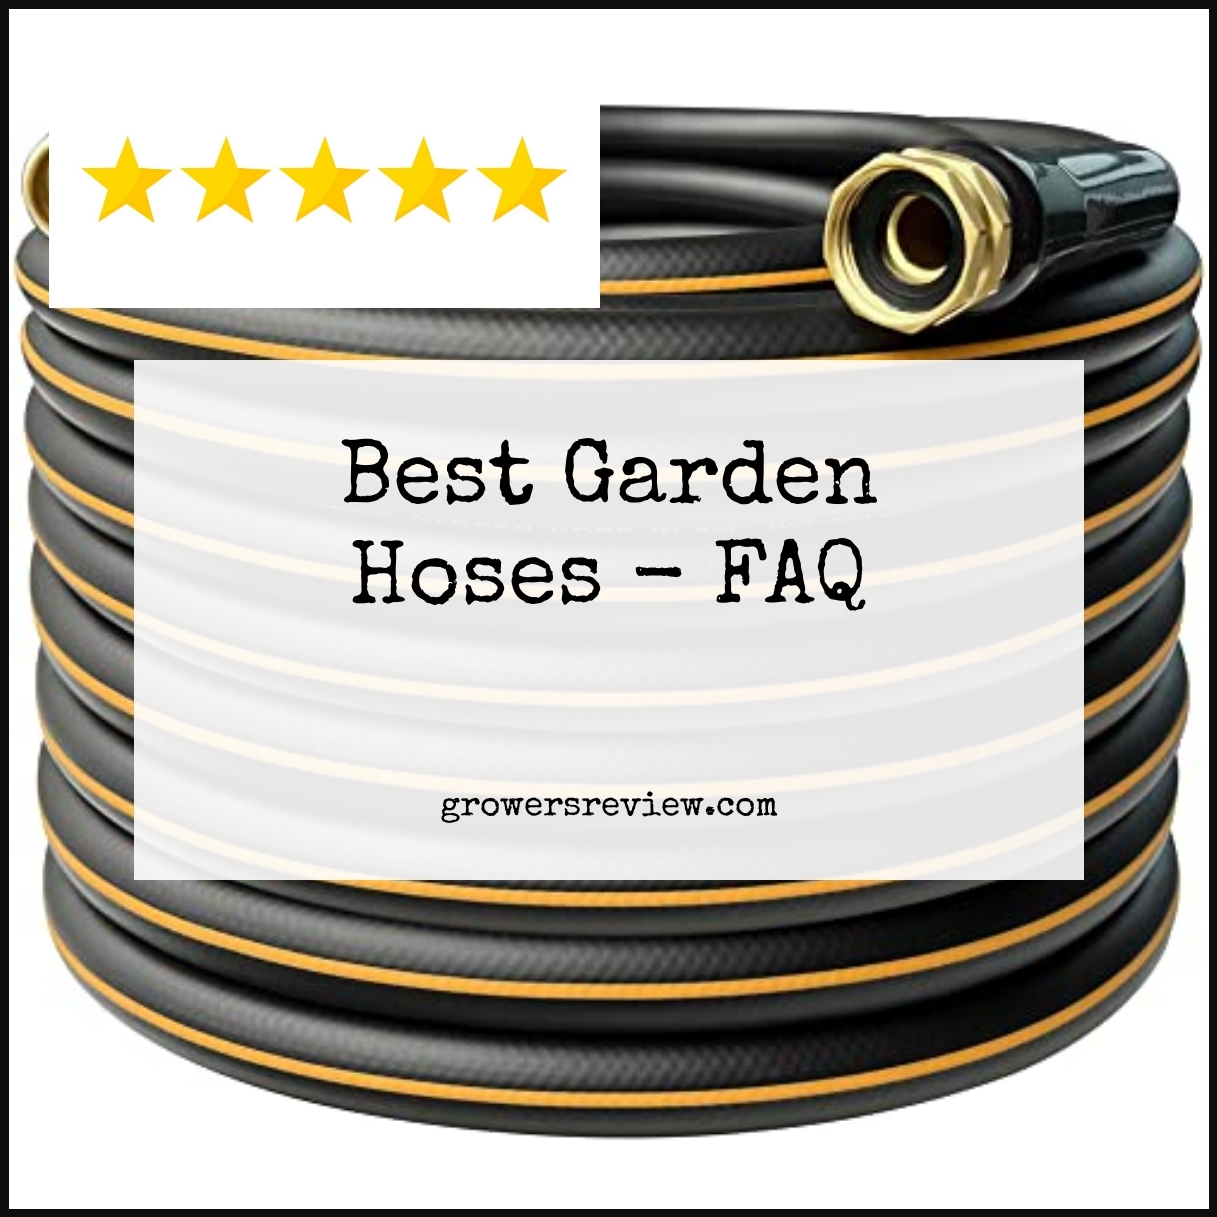 Best Garden Hoses - FAQ